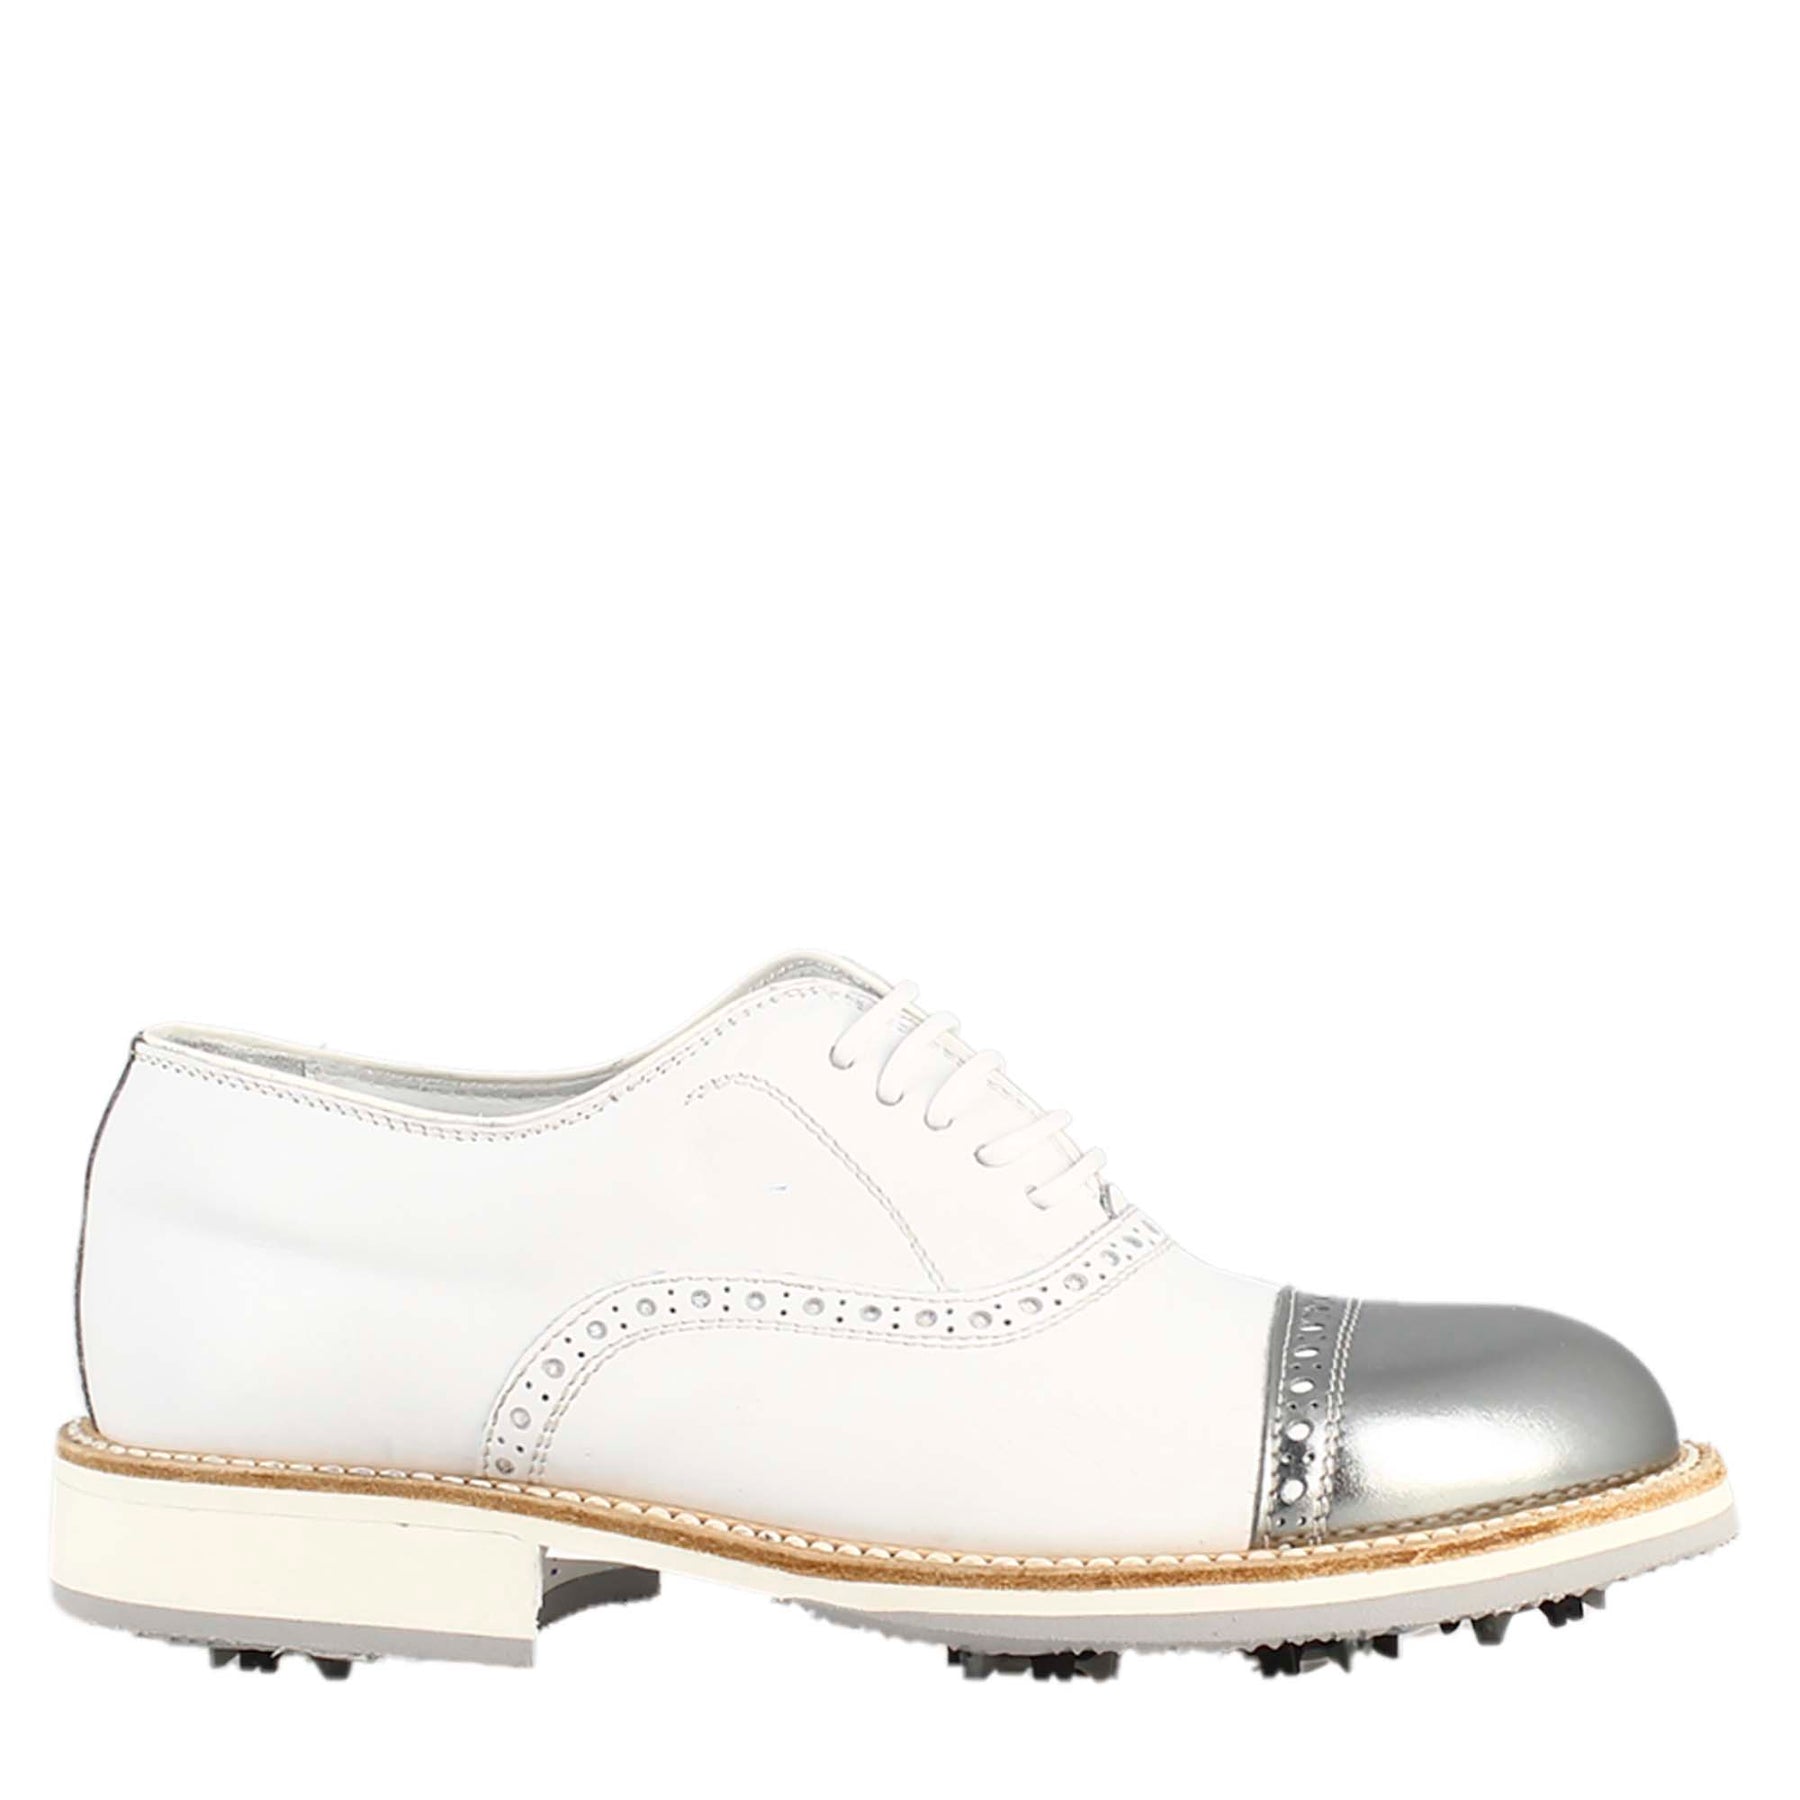 Scarpe golf da donna artigianali in pelle bianco e dettagli in argento